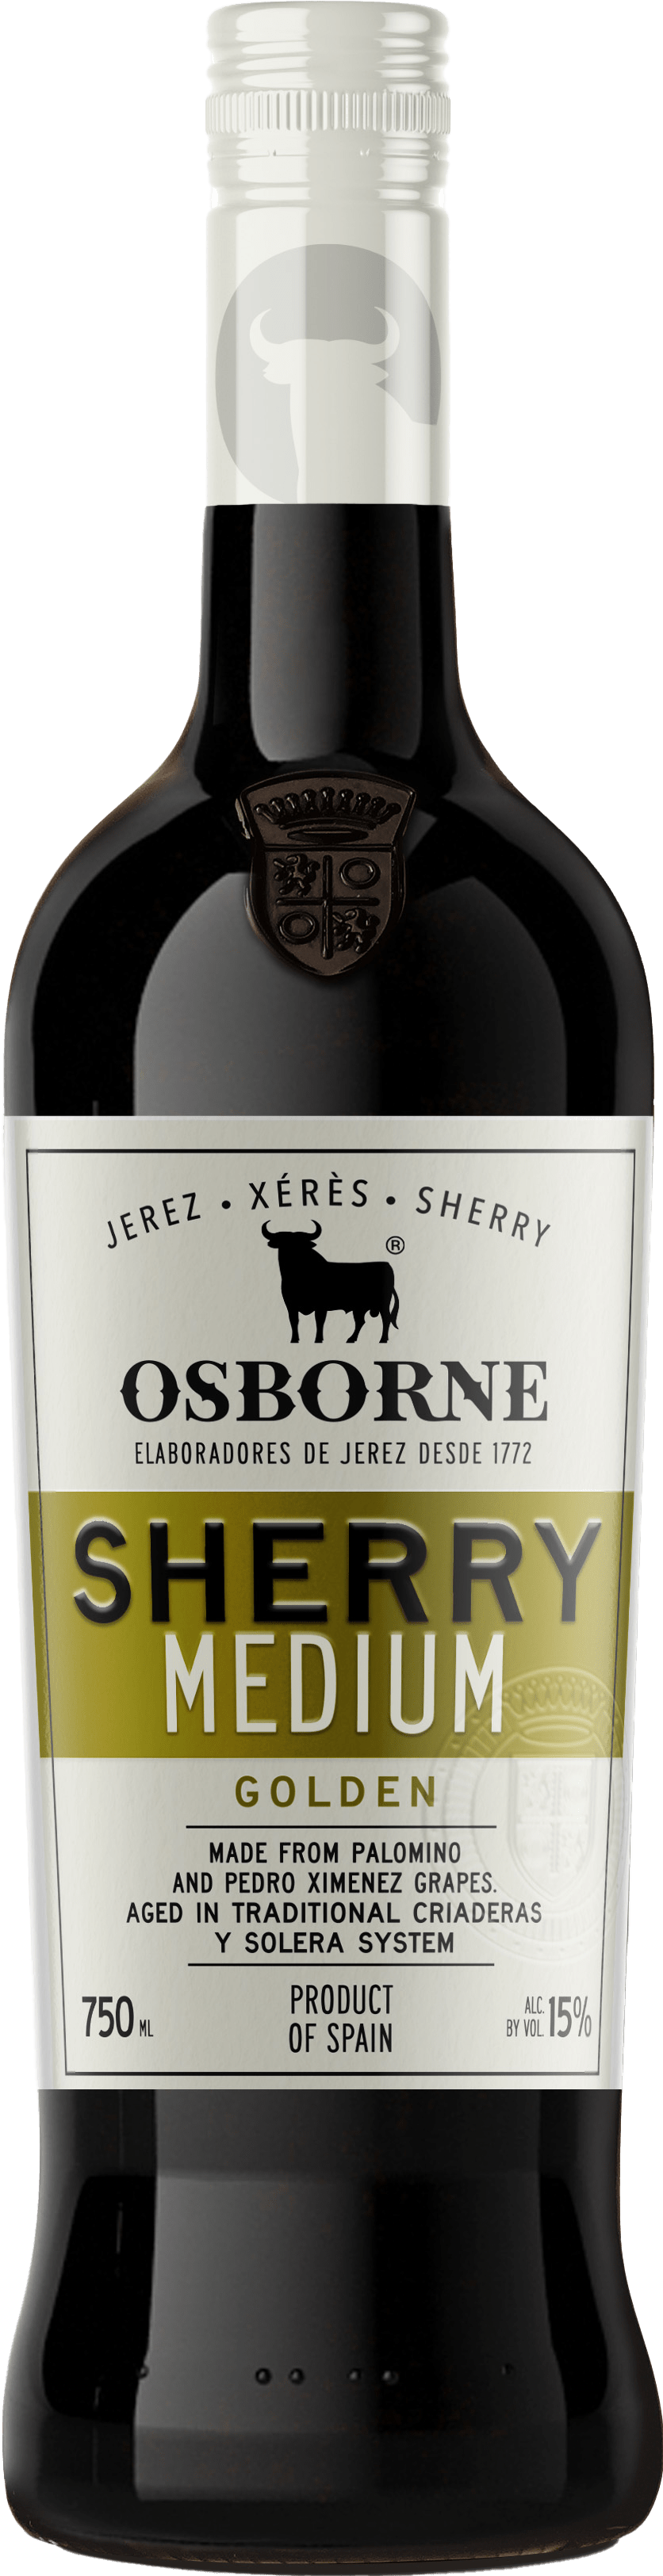 Osborne Sherry Golden Medium